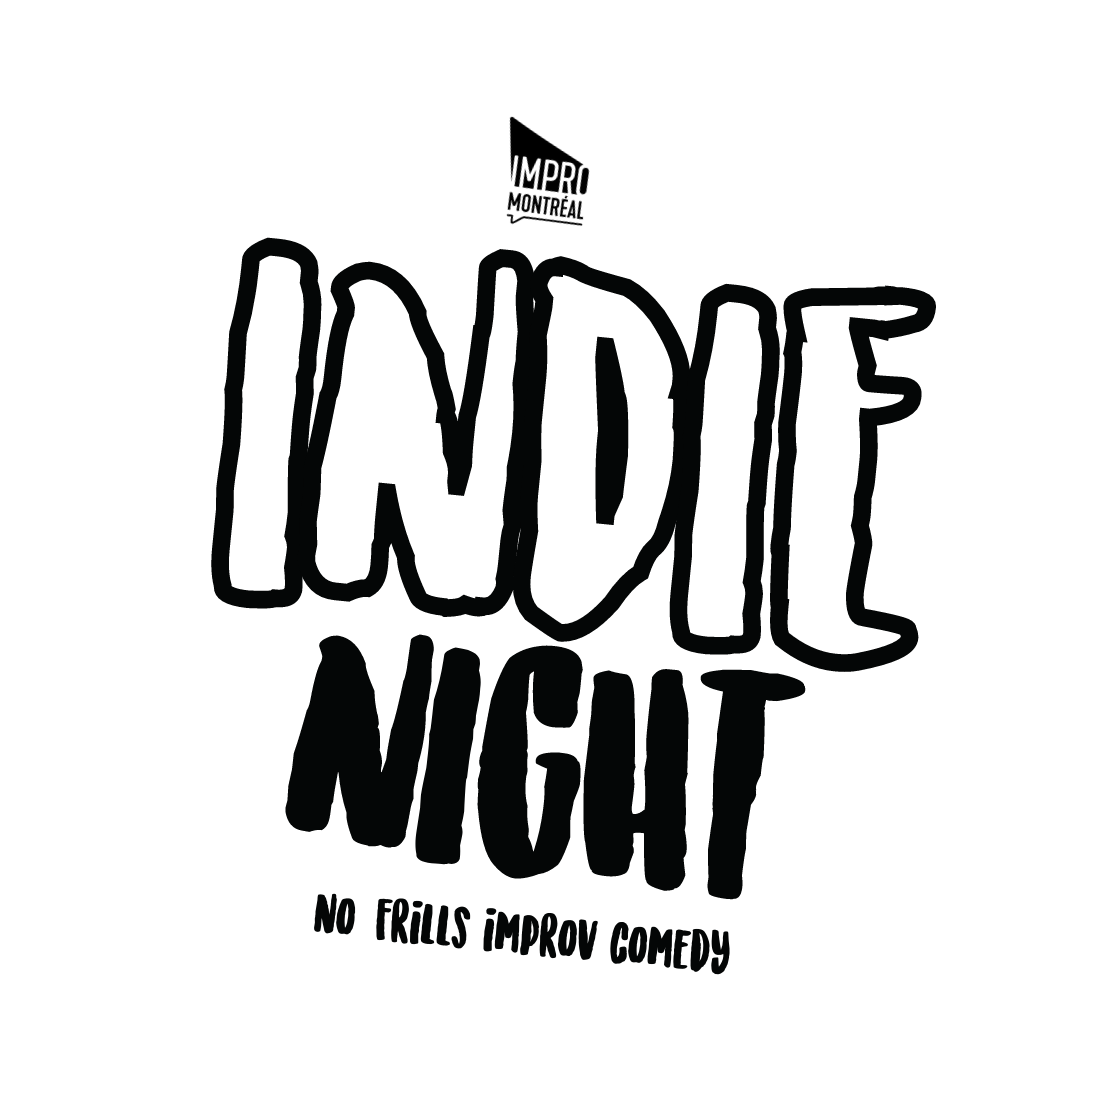 Indie Night Improv